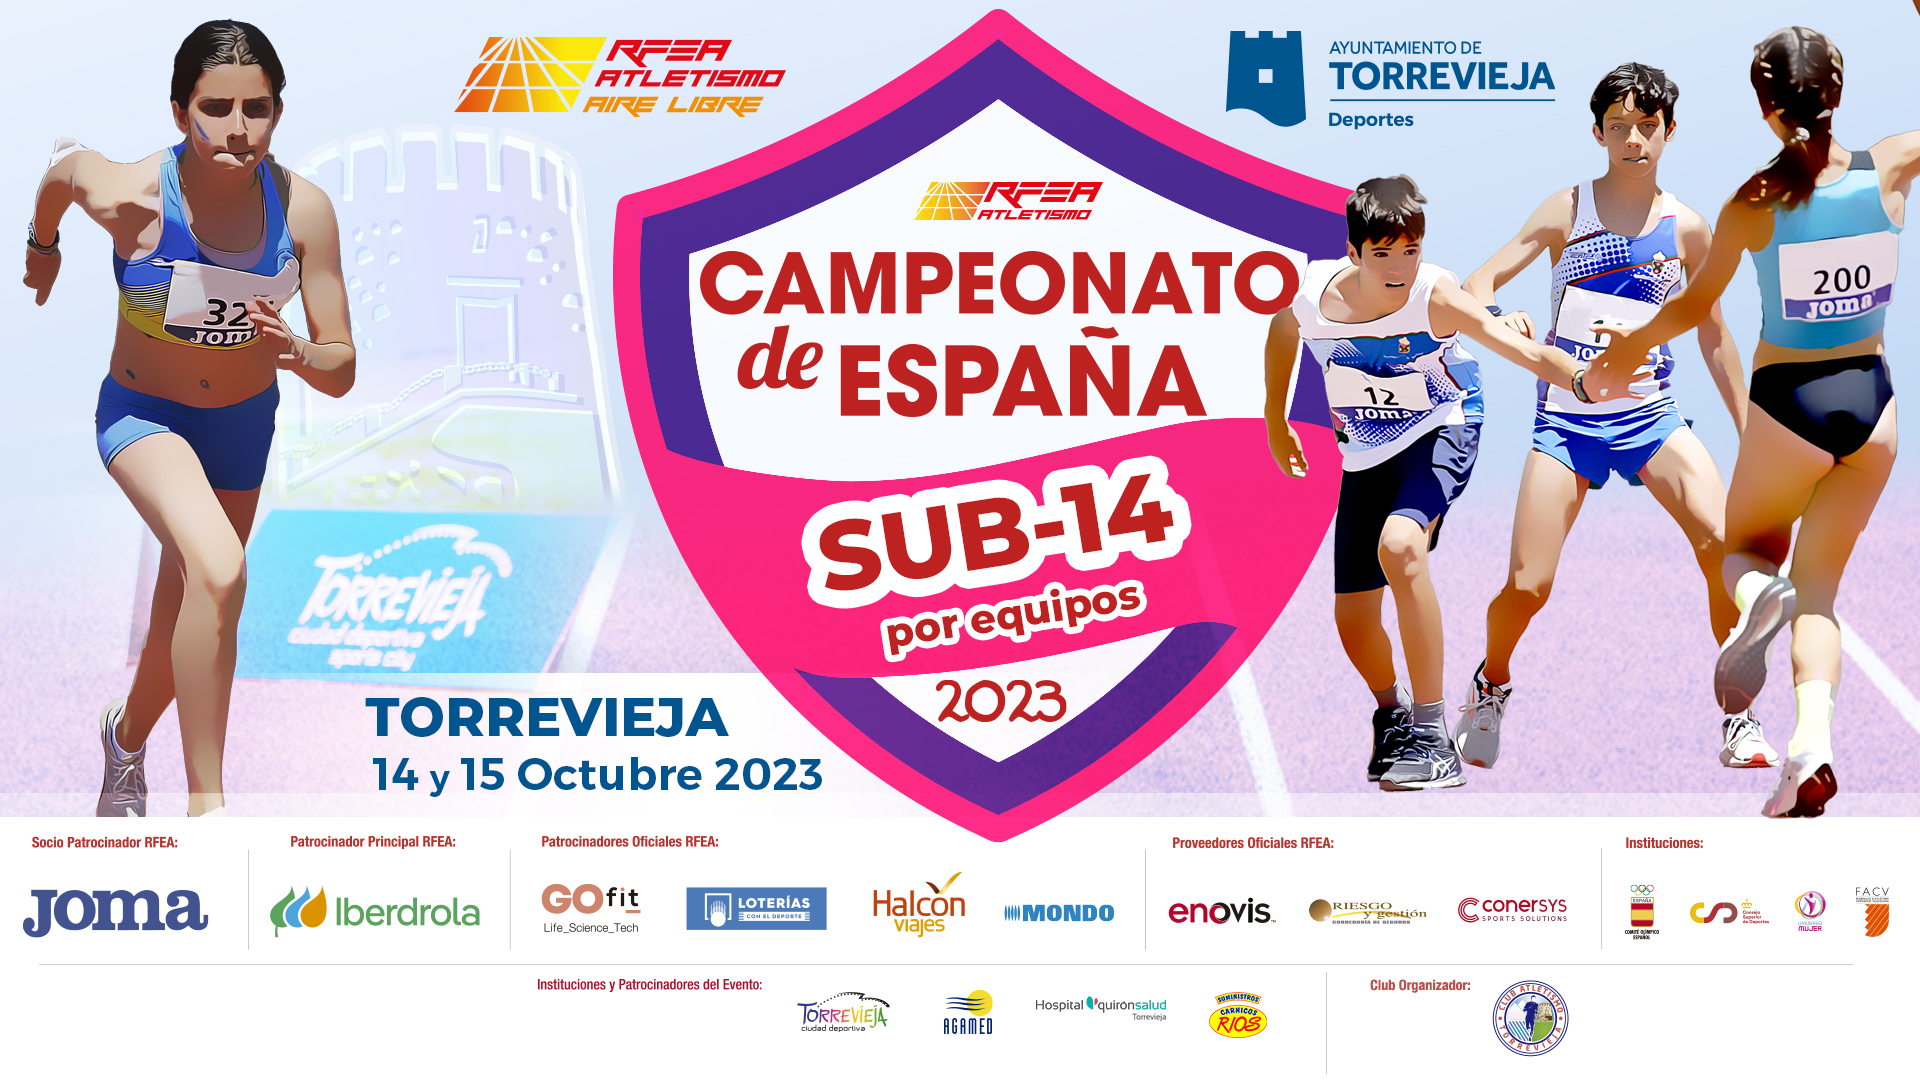 Torrevieja el acoge el Campeonato de España Sub14 por equipos